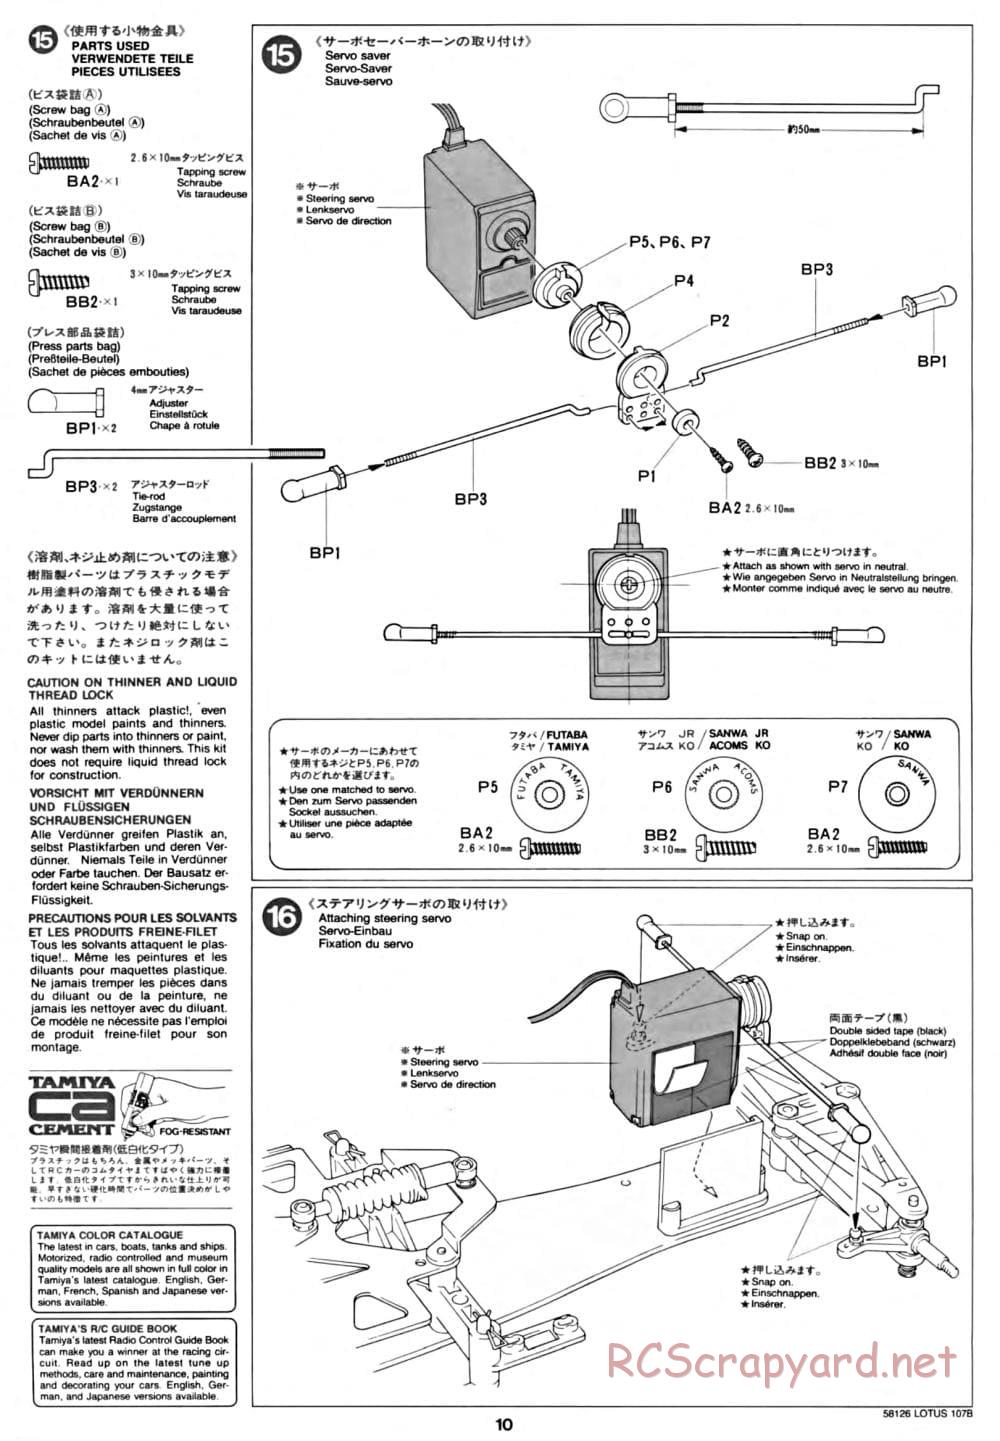 Tamiya - Lotus 107B Ford - F103 Chassis - Manual - Page 10